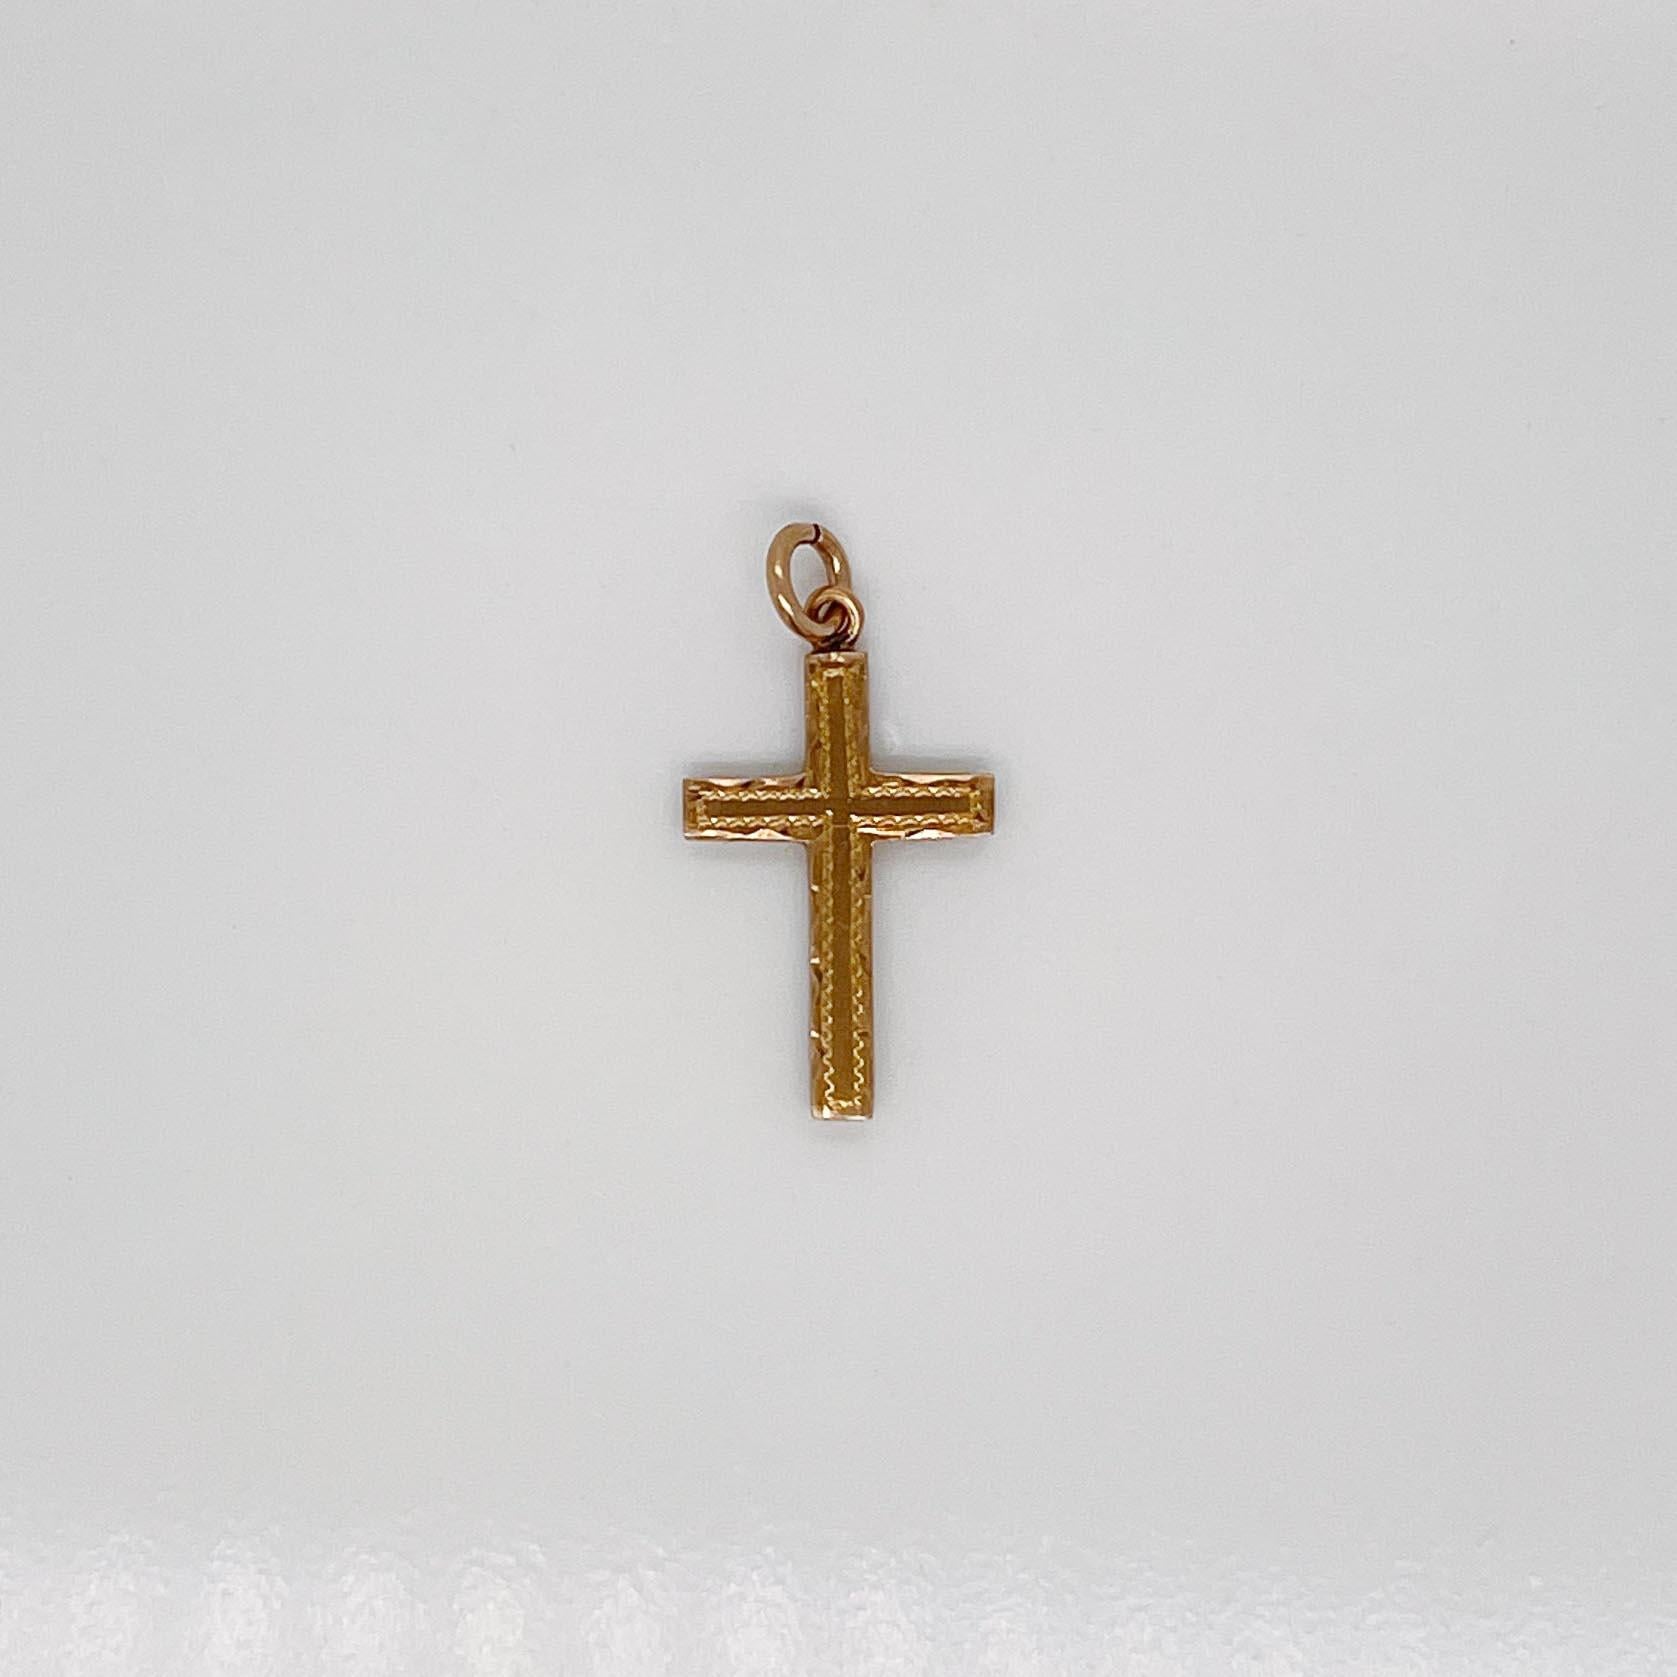 Un très beau petit pendentif en forme de croix.

En or jaune 10 carats. 

Avec une décoration brite sur le devant. 

Sertie d'une boucle pour être attachée à un collier ou un bracelet.

Dans l'ensemble, tout simplement une merveilleuse breloque